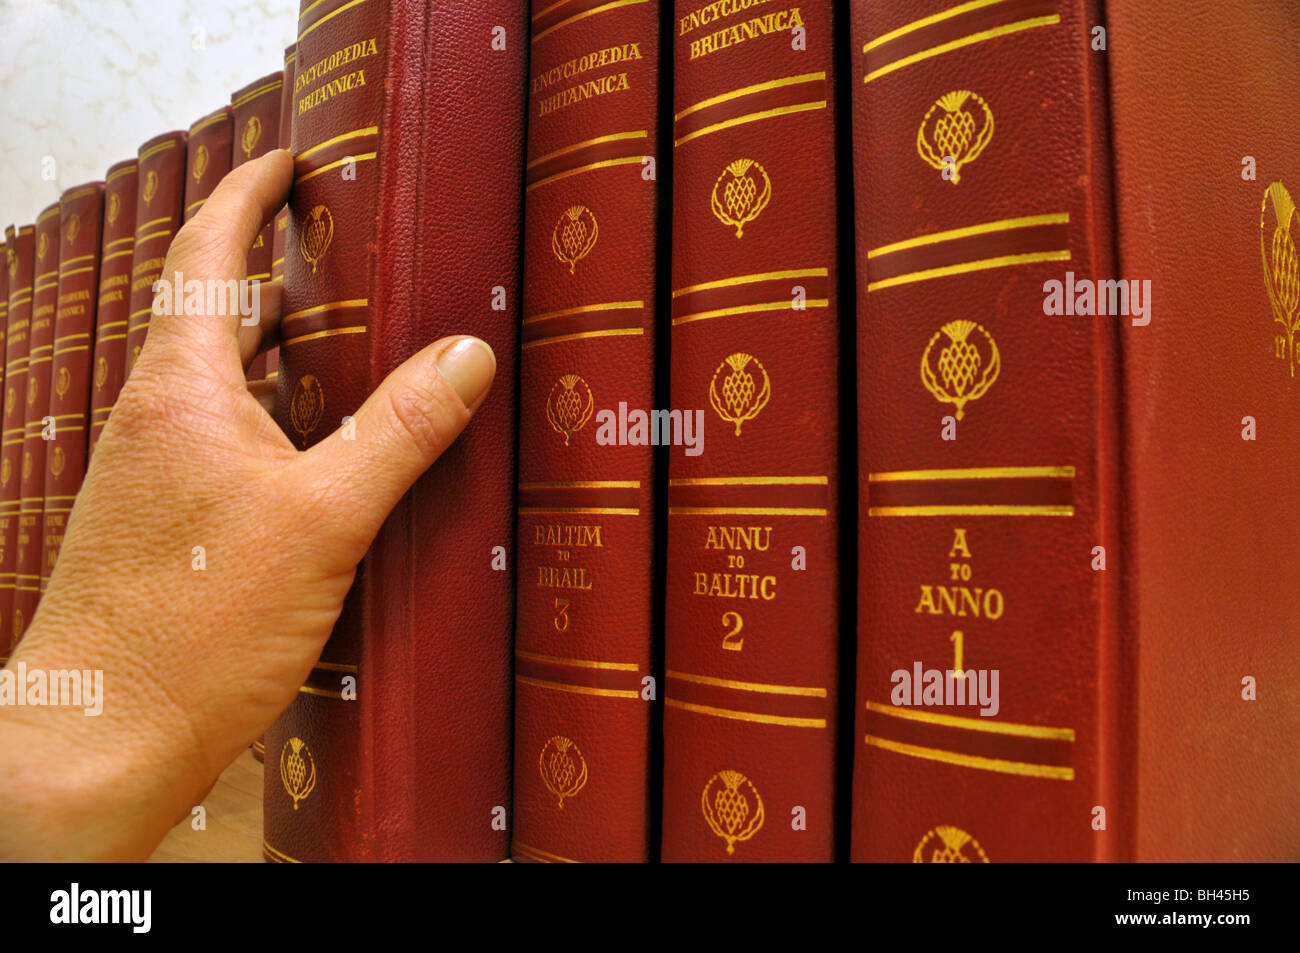 Primer plano de la mano de una persona al seleccionar un volumen a partir de una serie de Britannica libros. Foto de stock